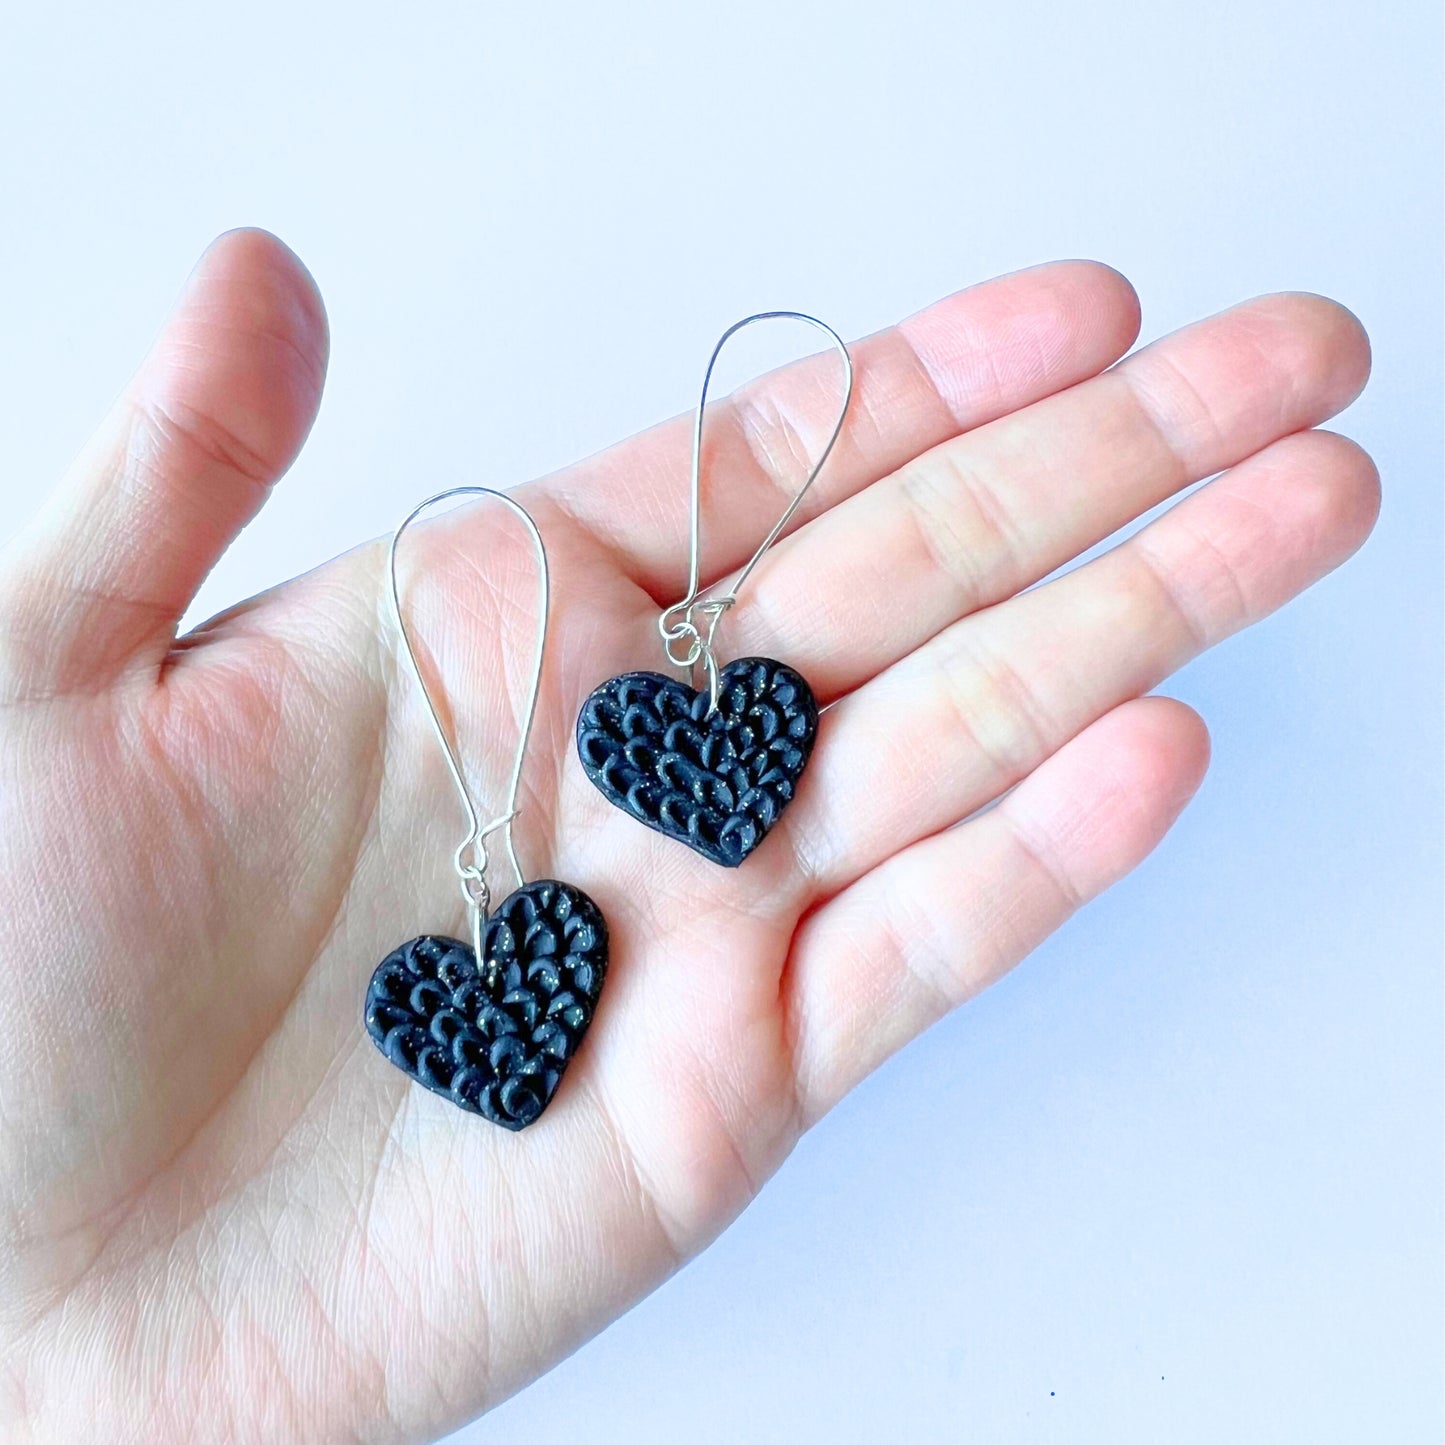 Black Heart Earrings